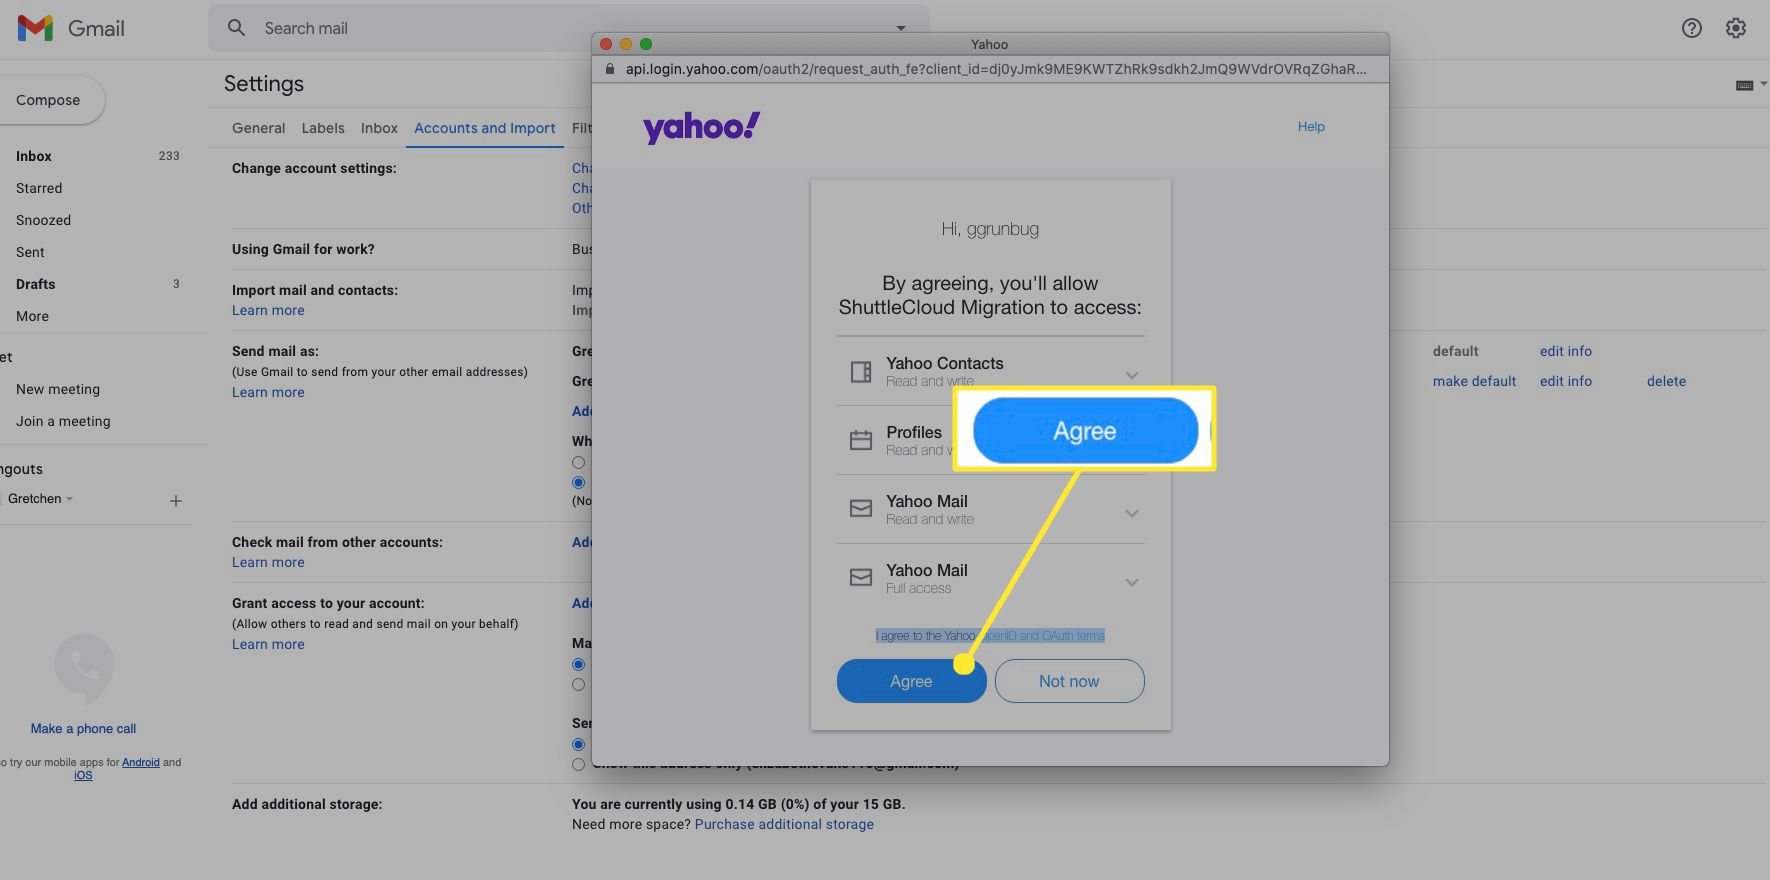 Vyberte Souhlasím a povolte migraci ShuttleCloud přístup k vašim kontaktům, profilům a poště na Yahoo.